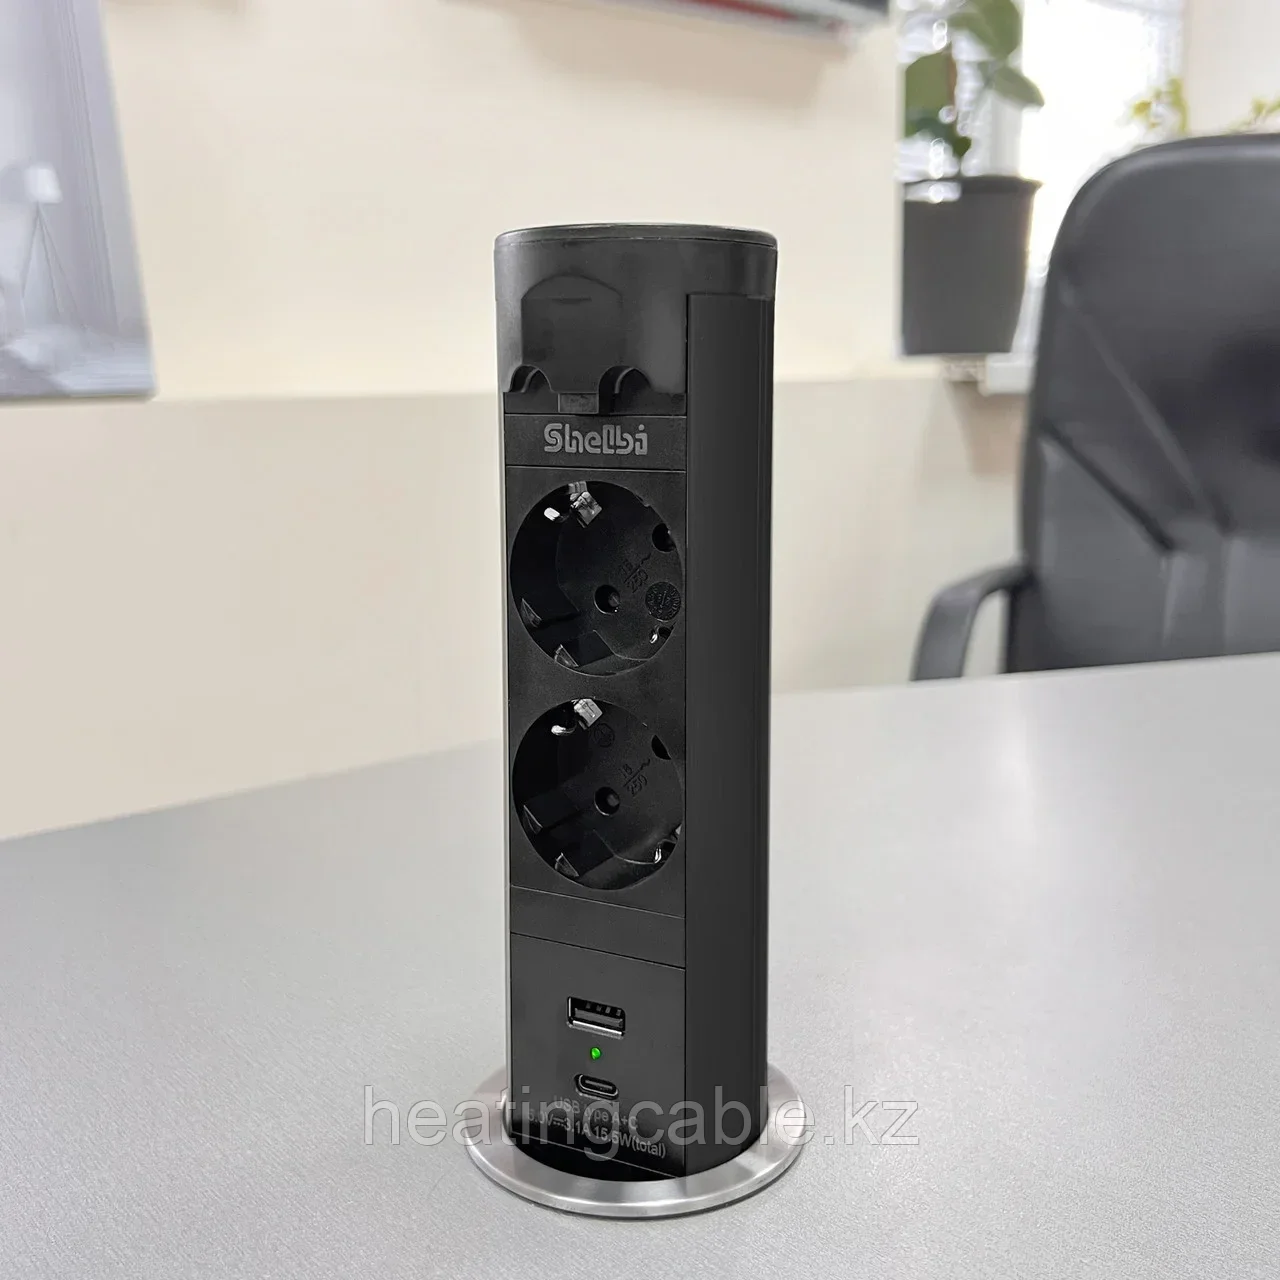 Shelbi Выдвижной-автоматический настольный розеточный блок на 2 розетки 200B, 1 USB, 1 Type-C, чёрный